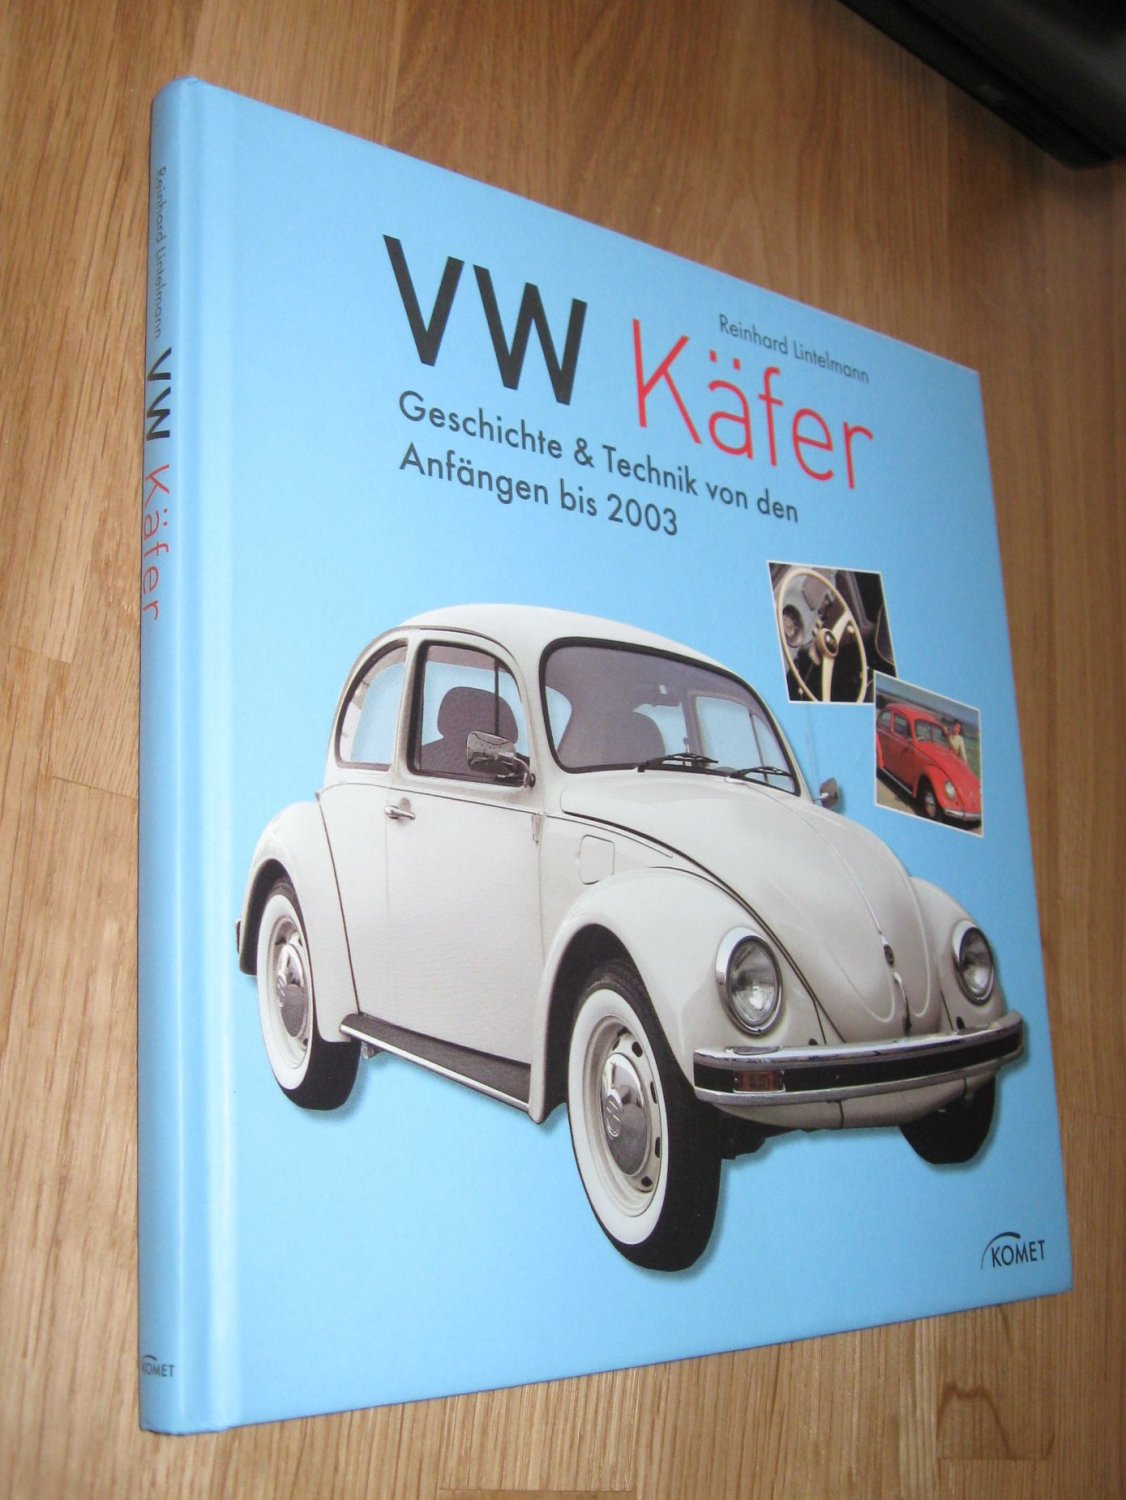 VW Käfer: Geschichte & Technik von den Anfängen bis 2003 - Lintelmann Reinhard